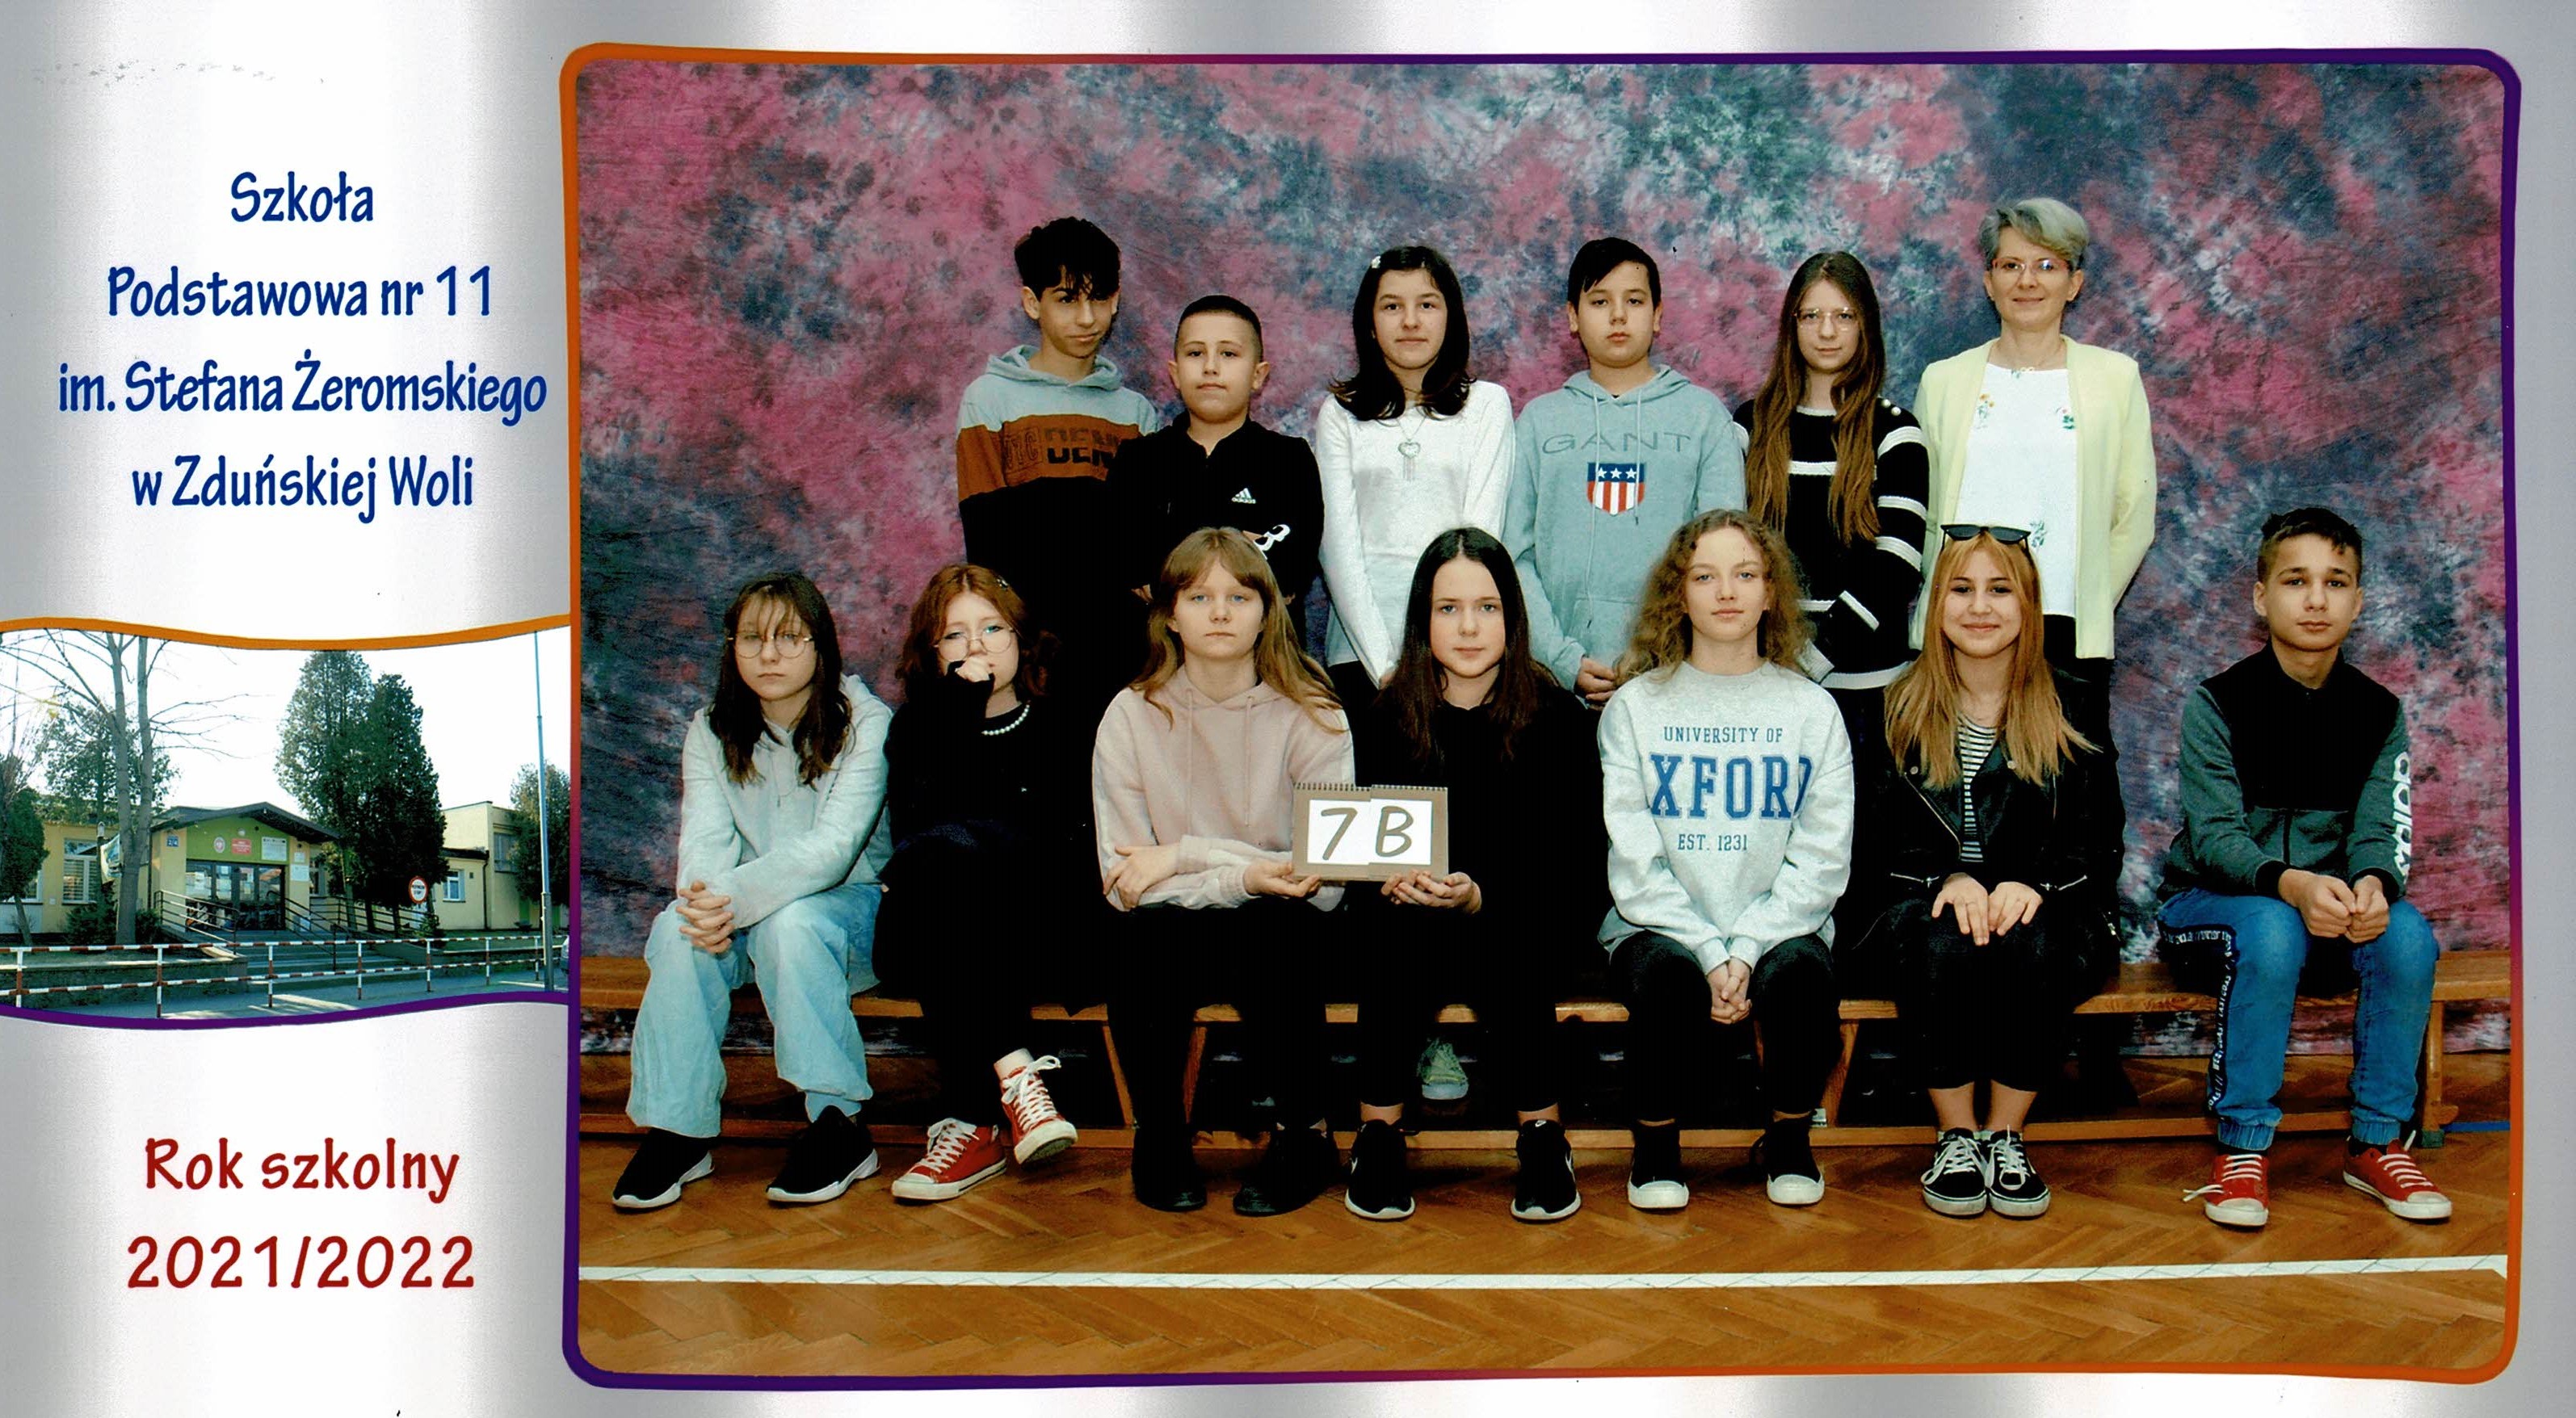 Uczniowie klasy 7b, dziewczynki i chłopcy siedzący na ławce z tabliczką "klasa 7b"